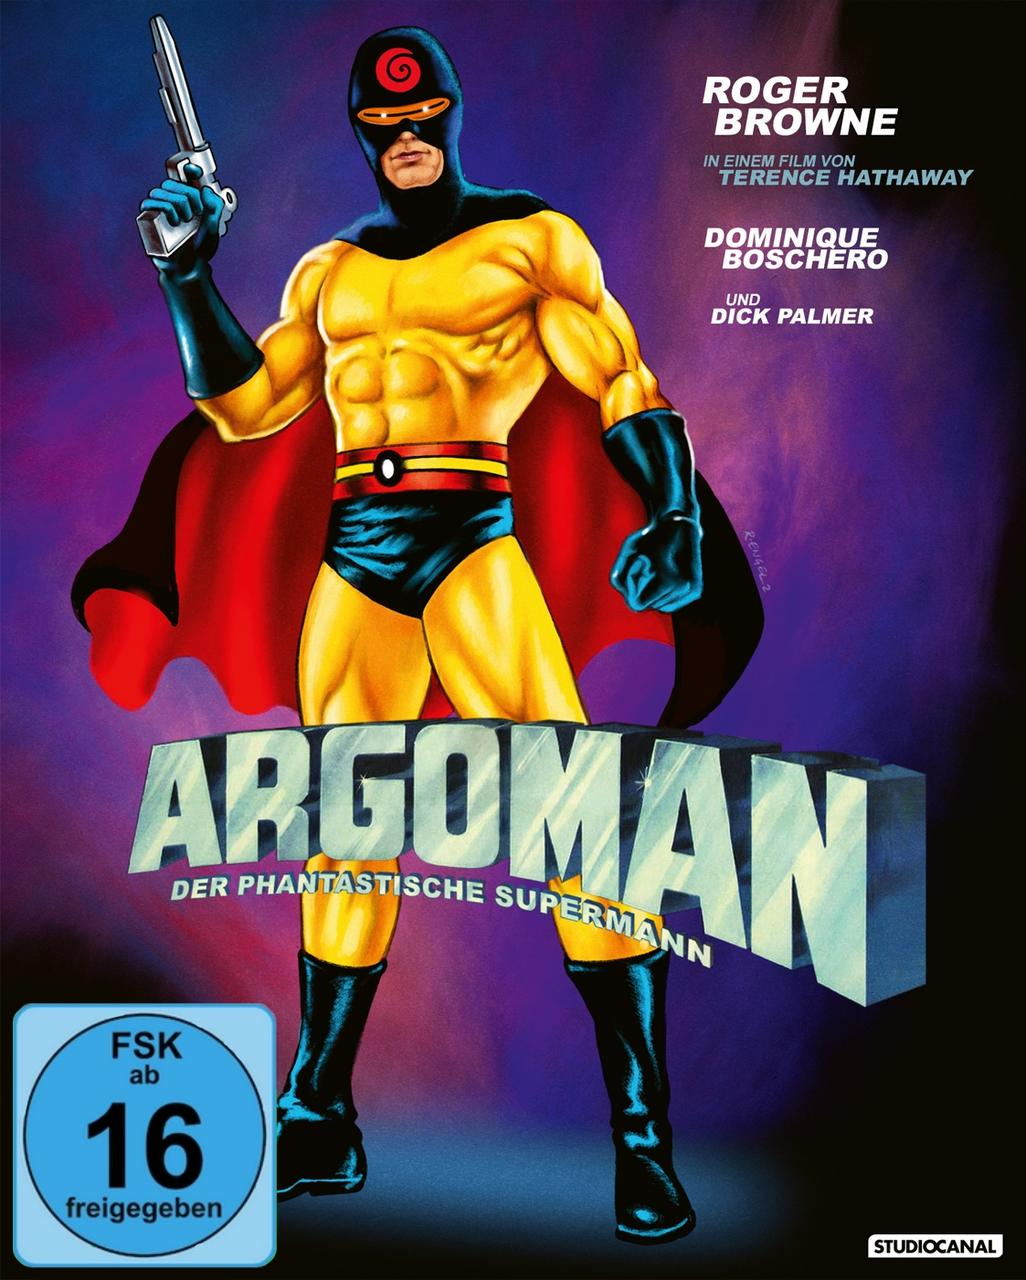 Der Supermann - Argoman phantastische Blu-ray